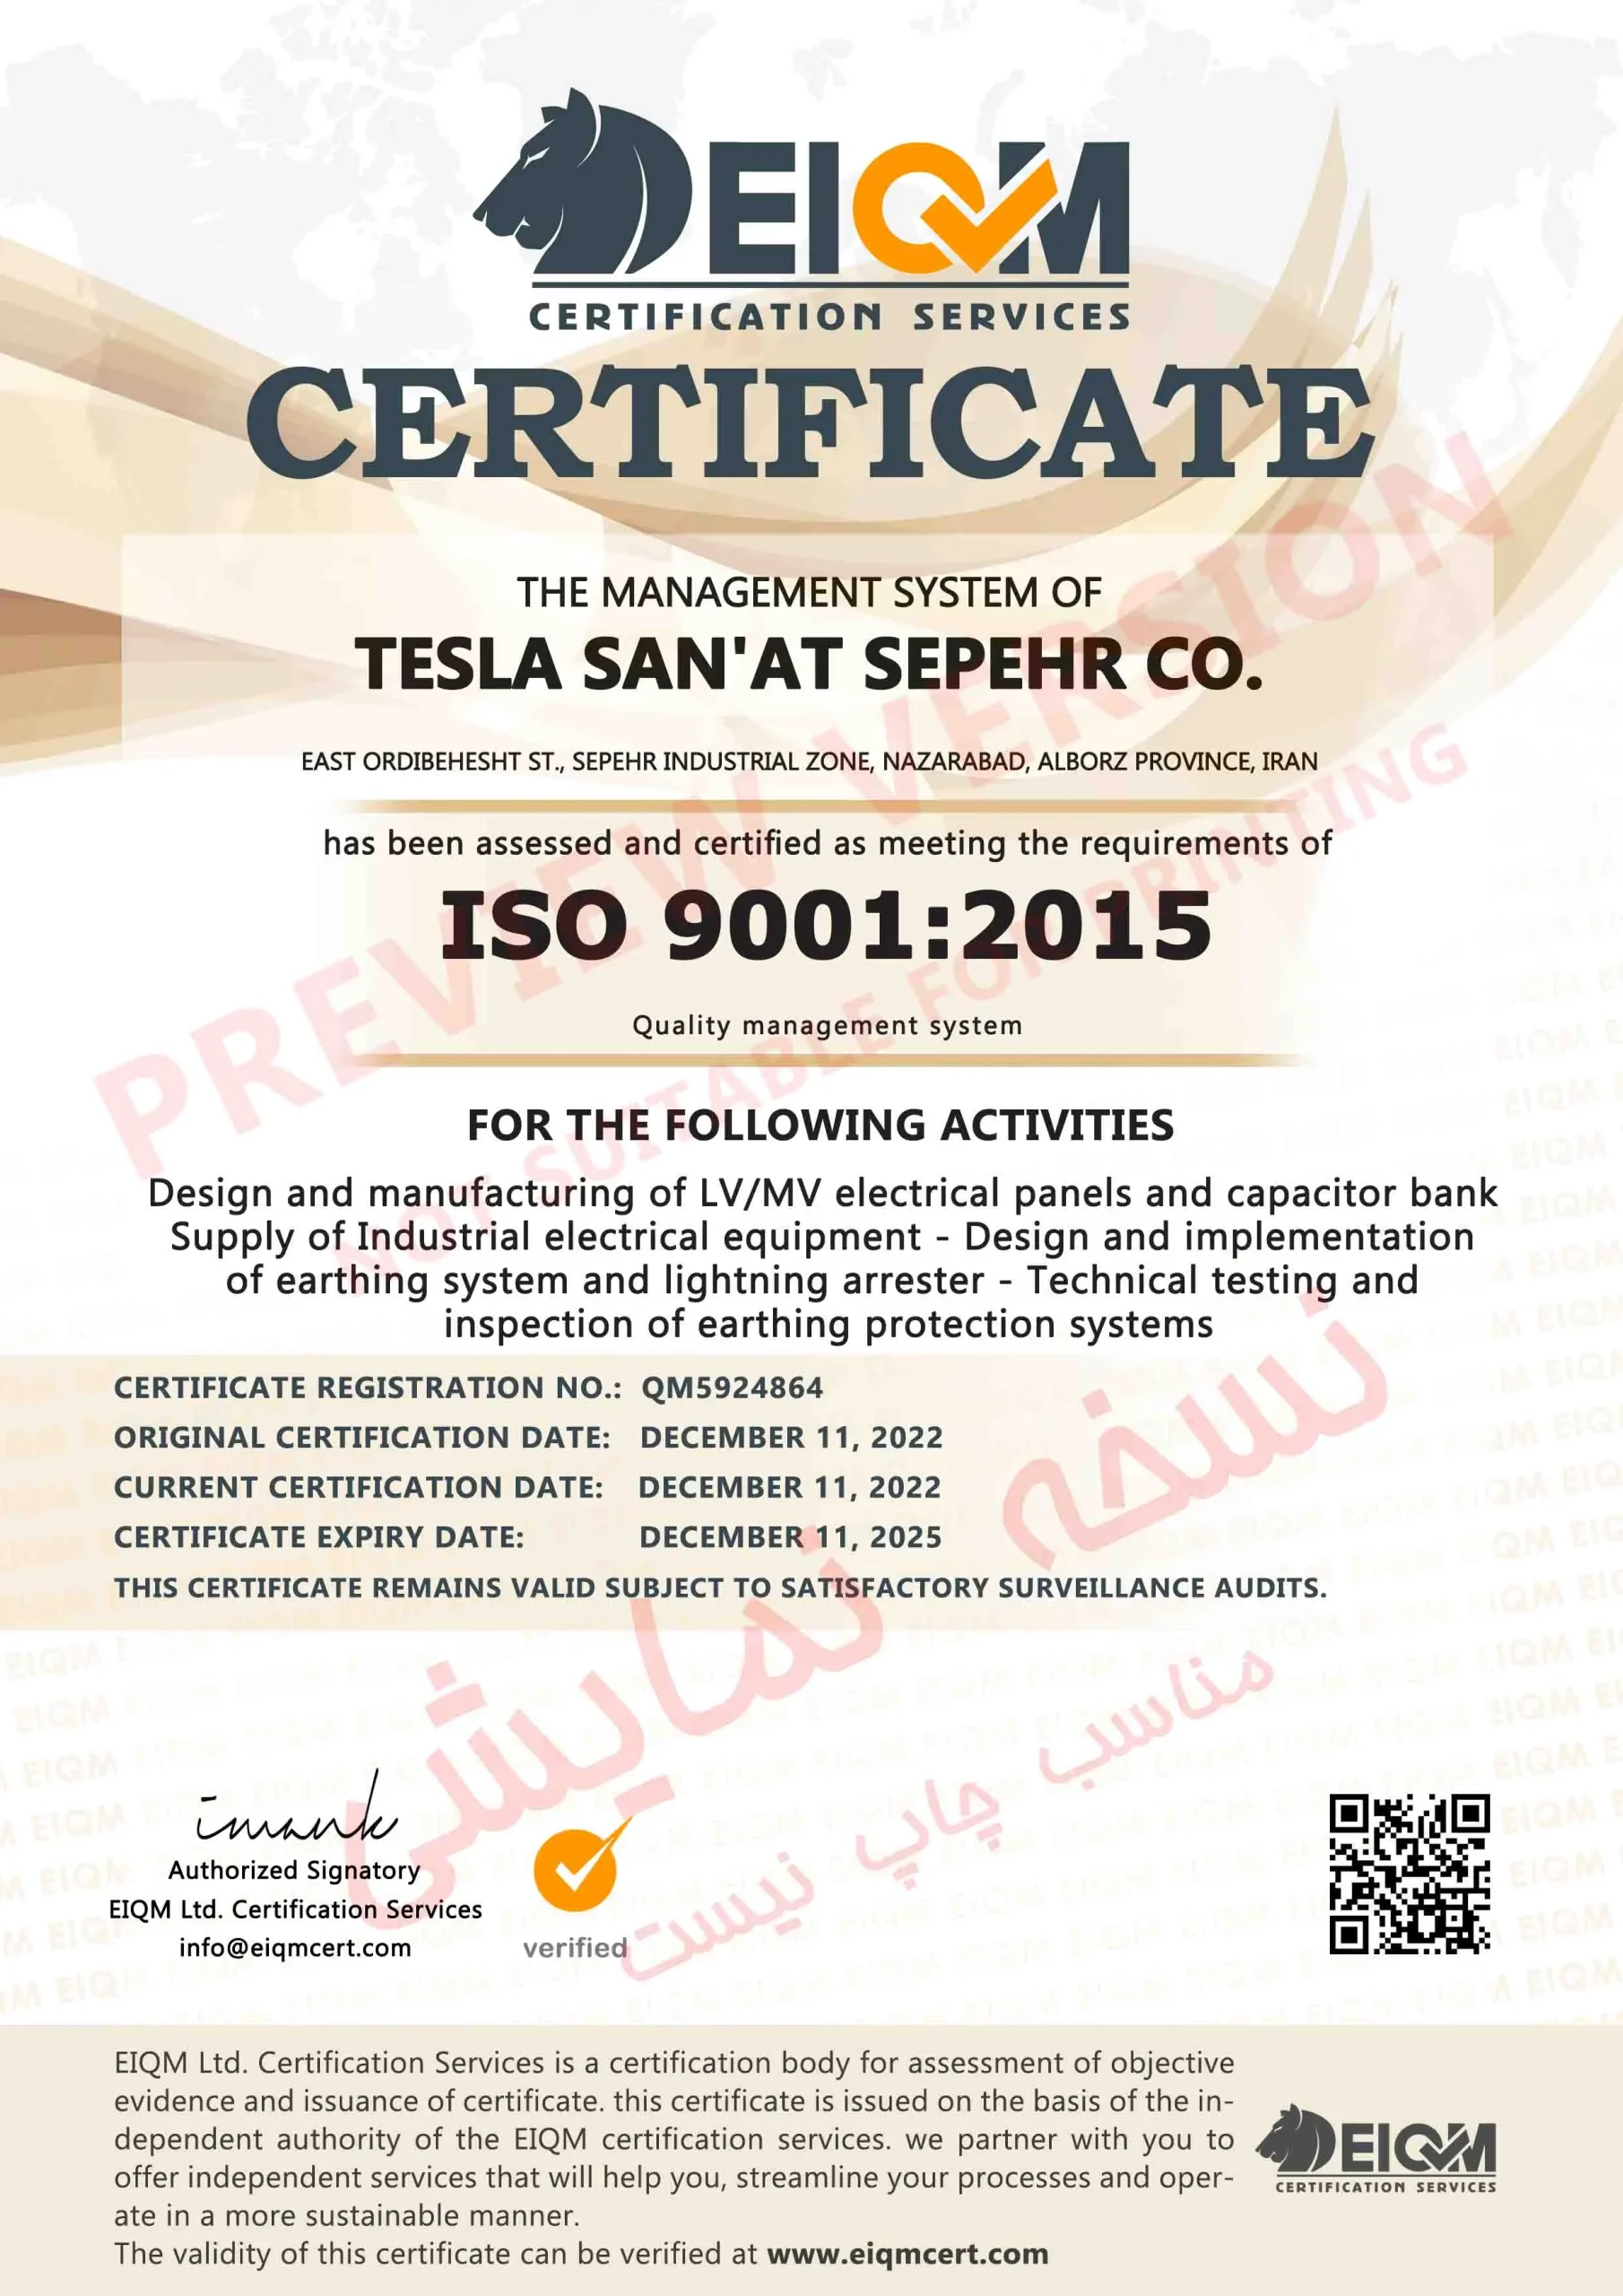 LQ-Tesla San'at Sepehr Co-ISO9001-QM5924864